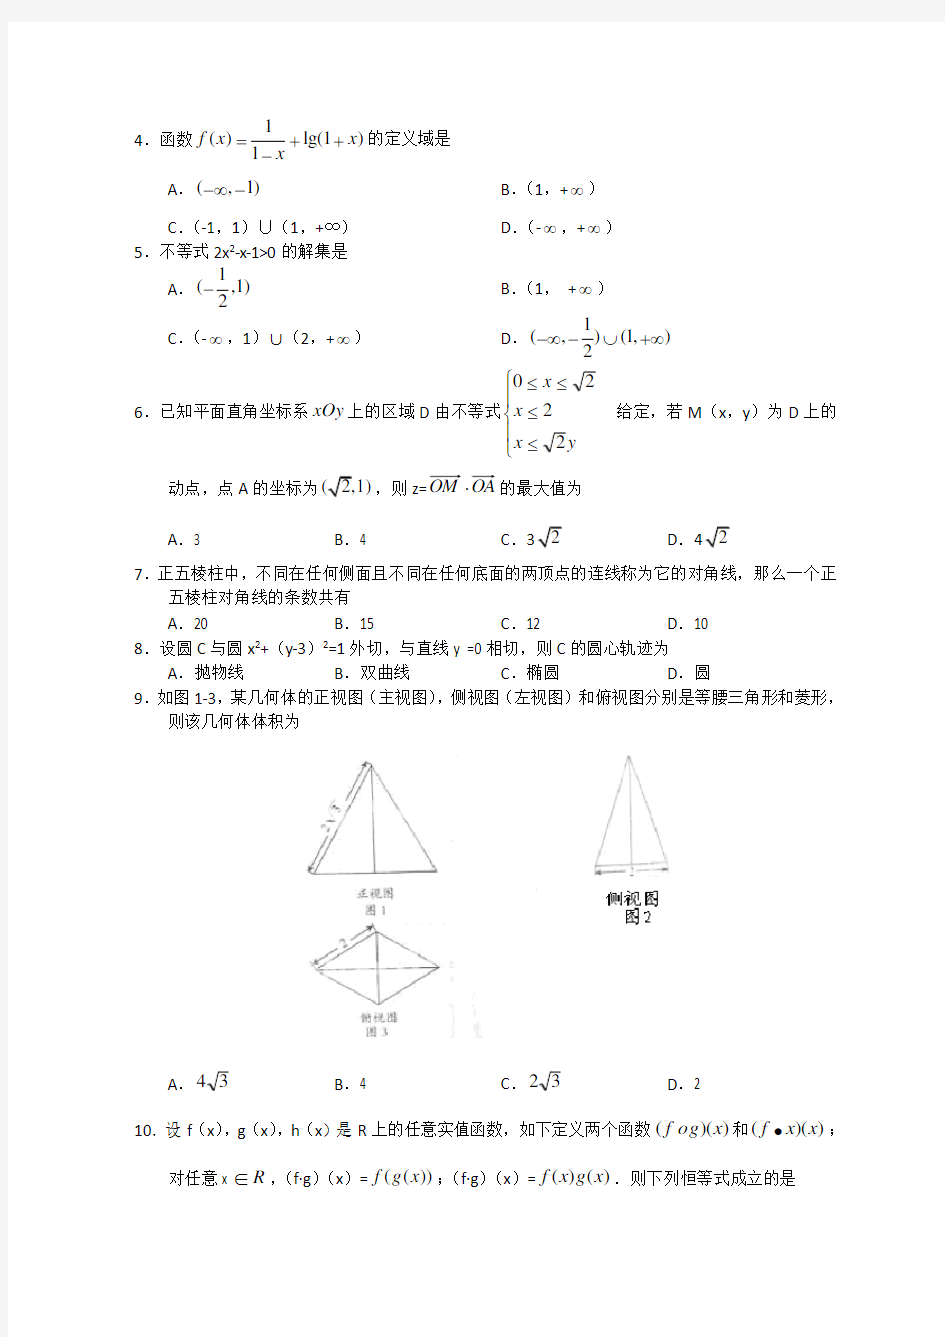 2011年全国高考文科数学试题及答案-广东